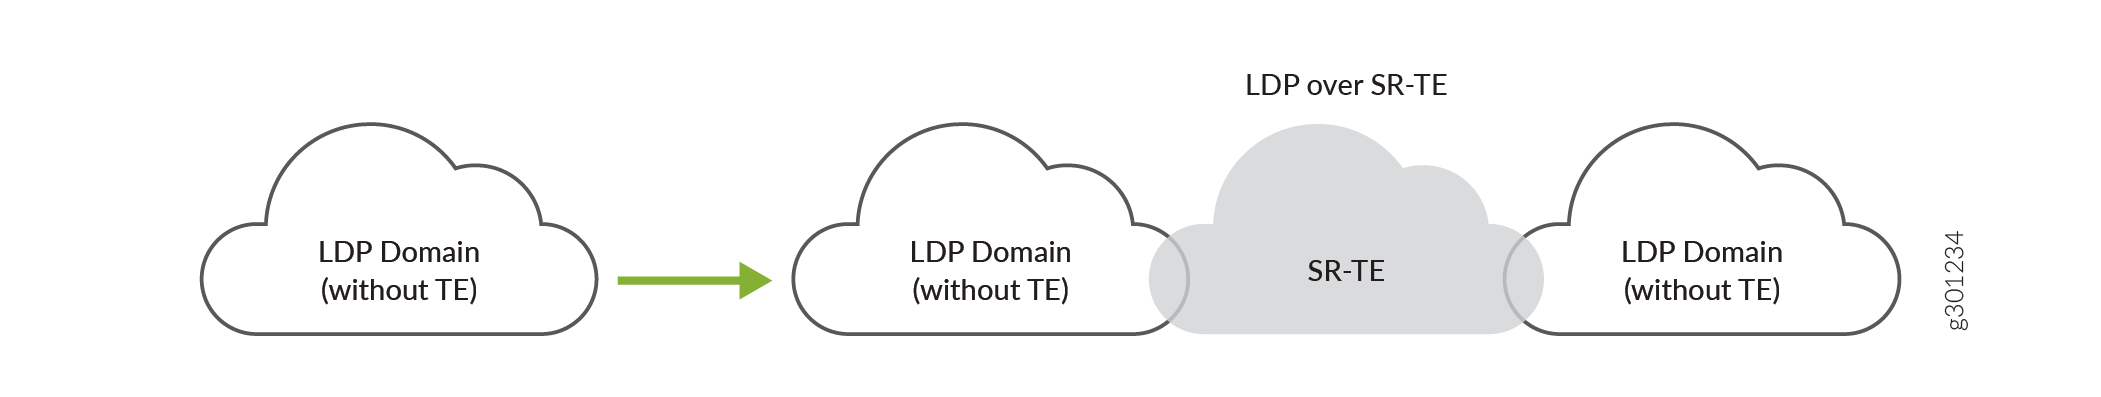 Interconnexion des domaines LDP via SR-TE dans le réseau central